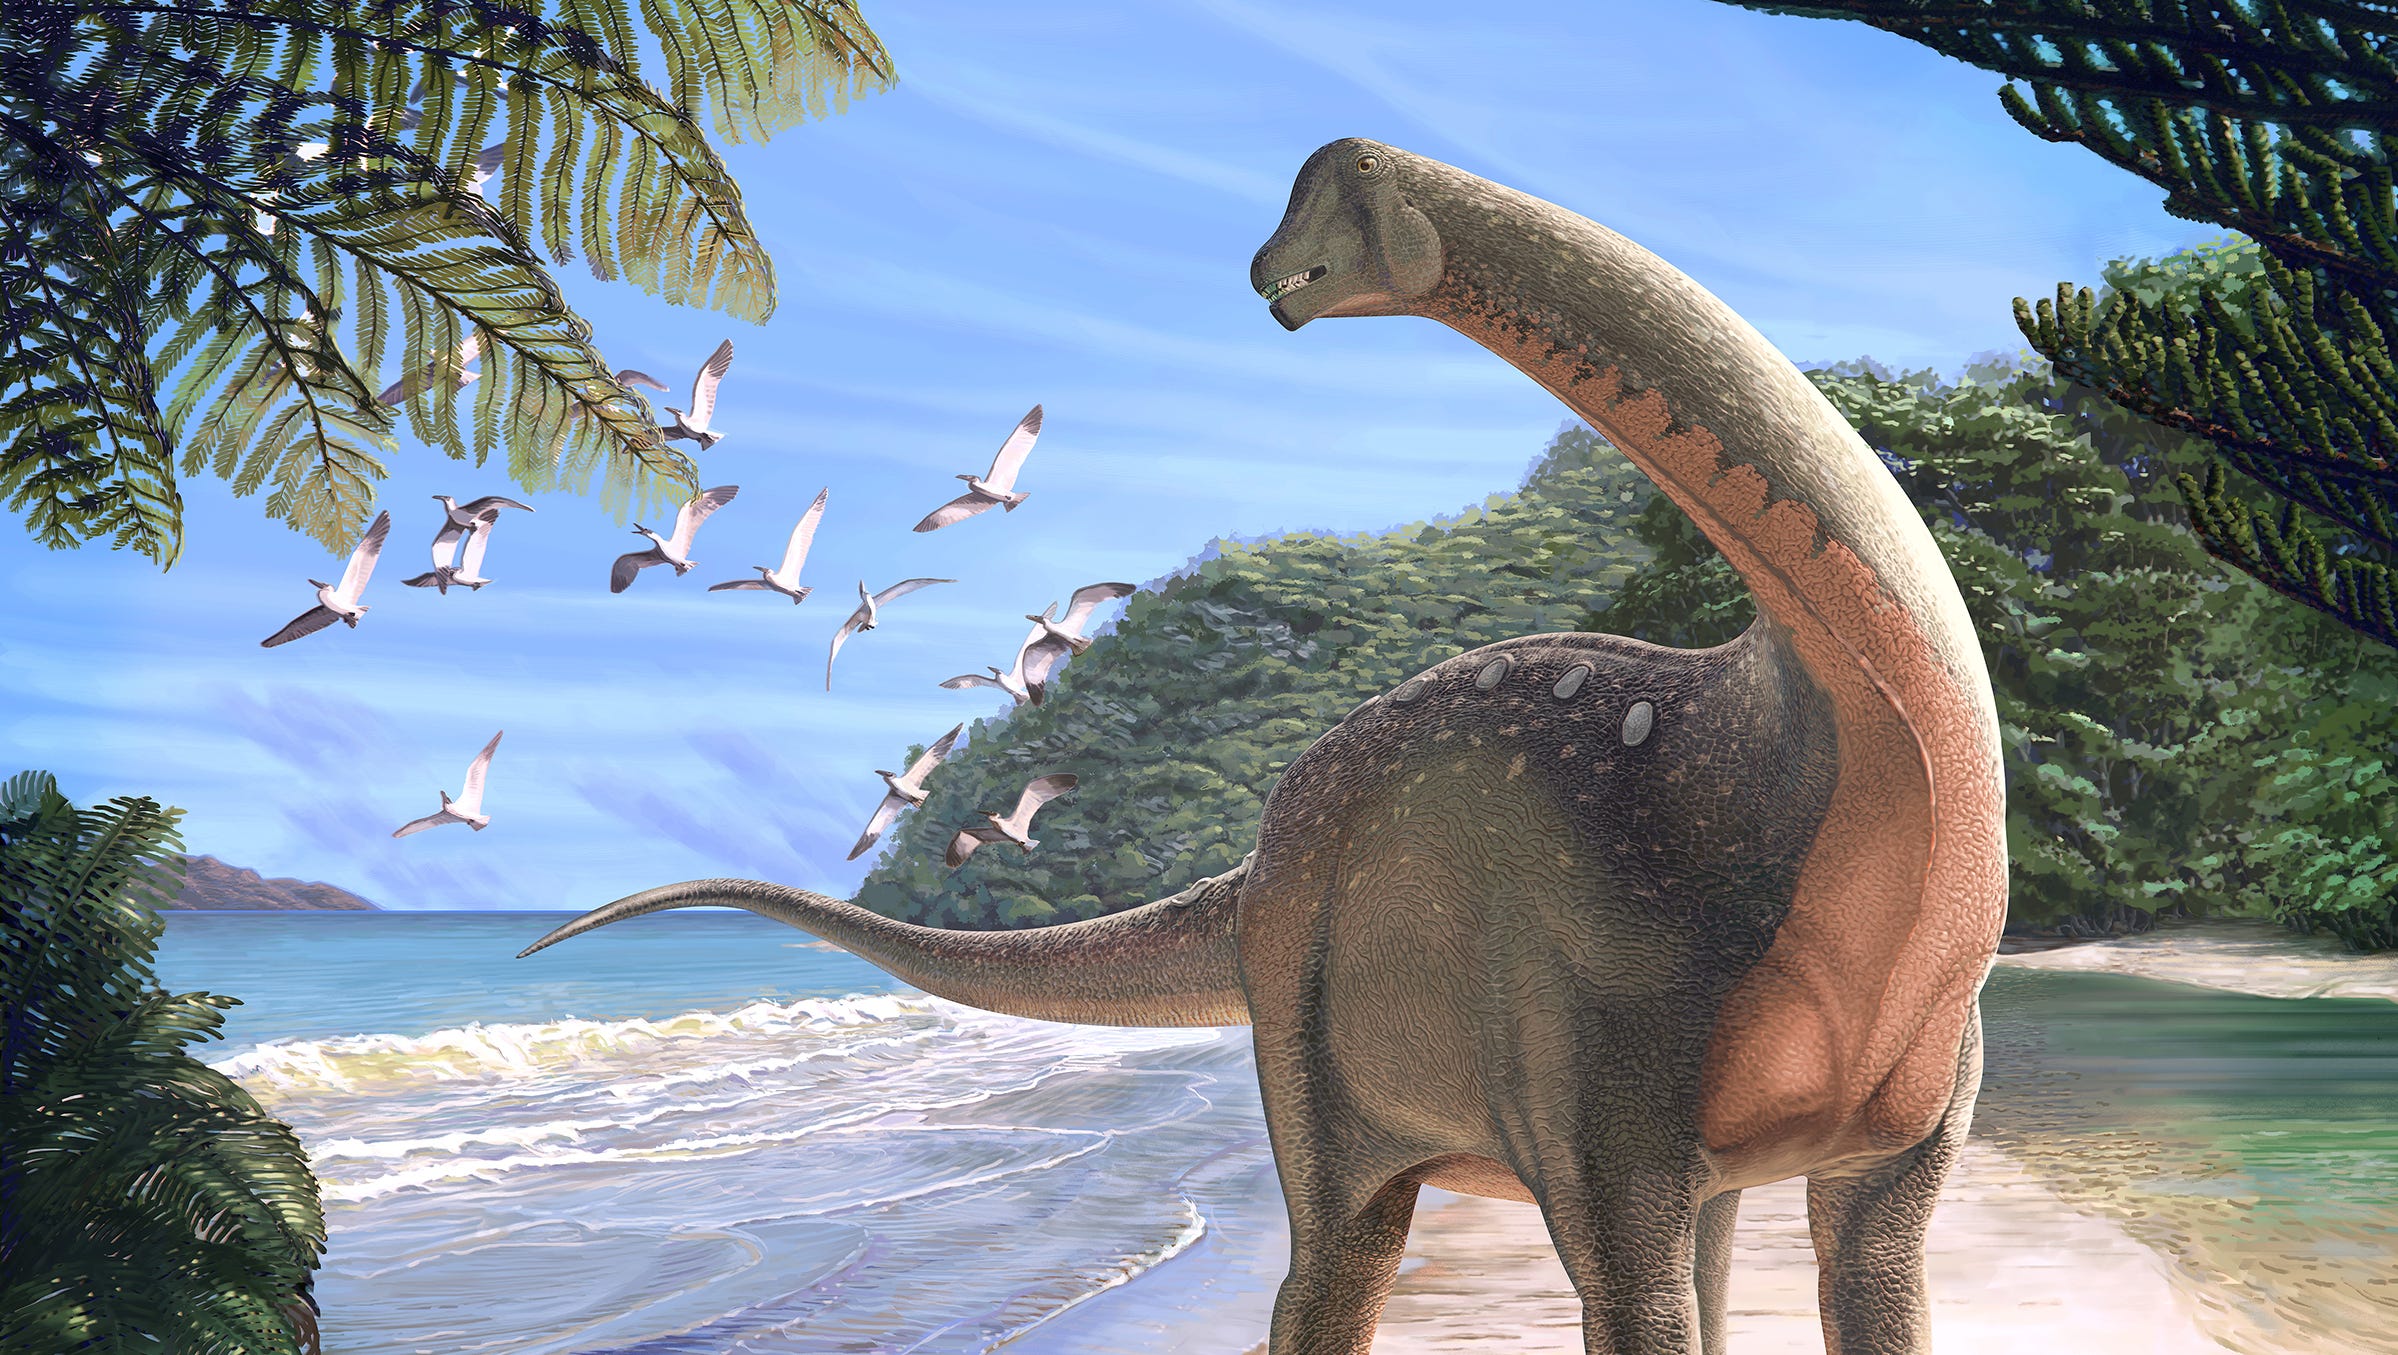 Holy Grail' of dinosaur fossils discovered in Egypt desert